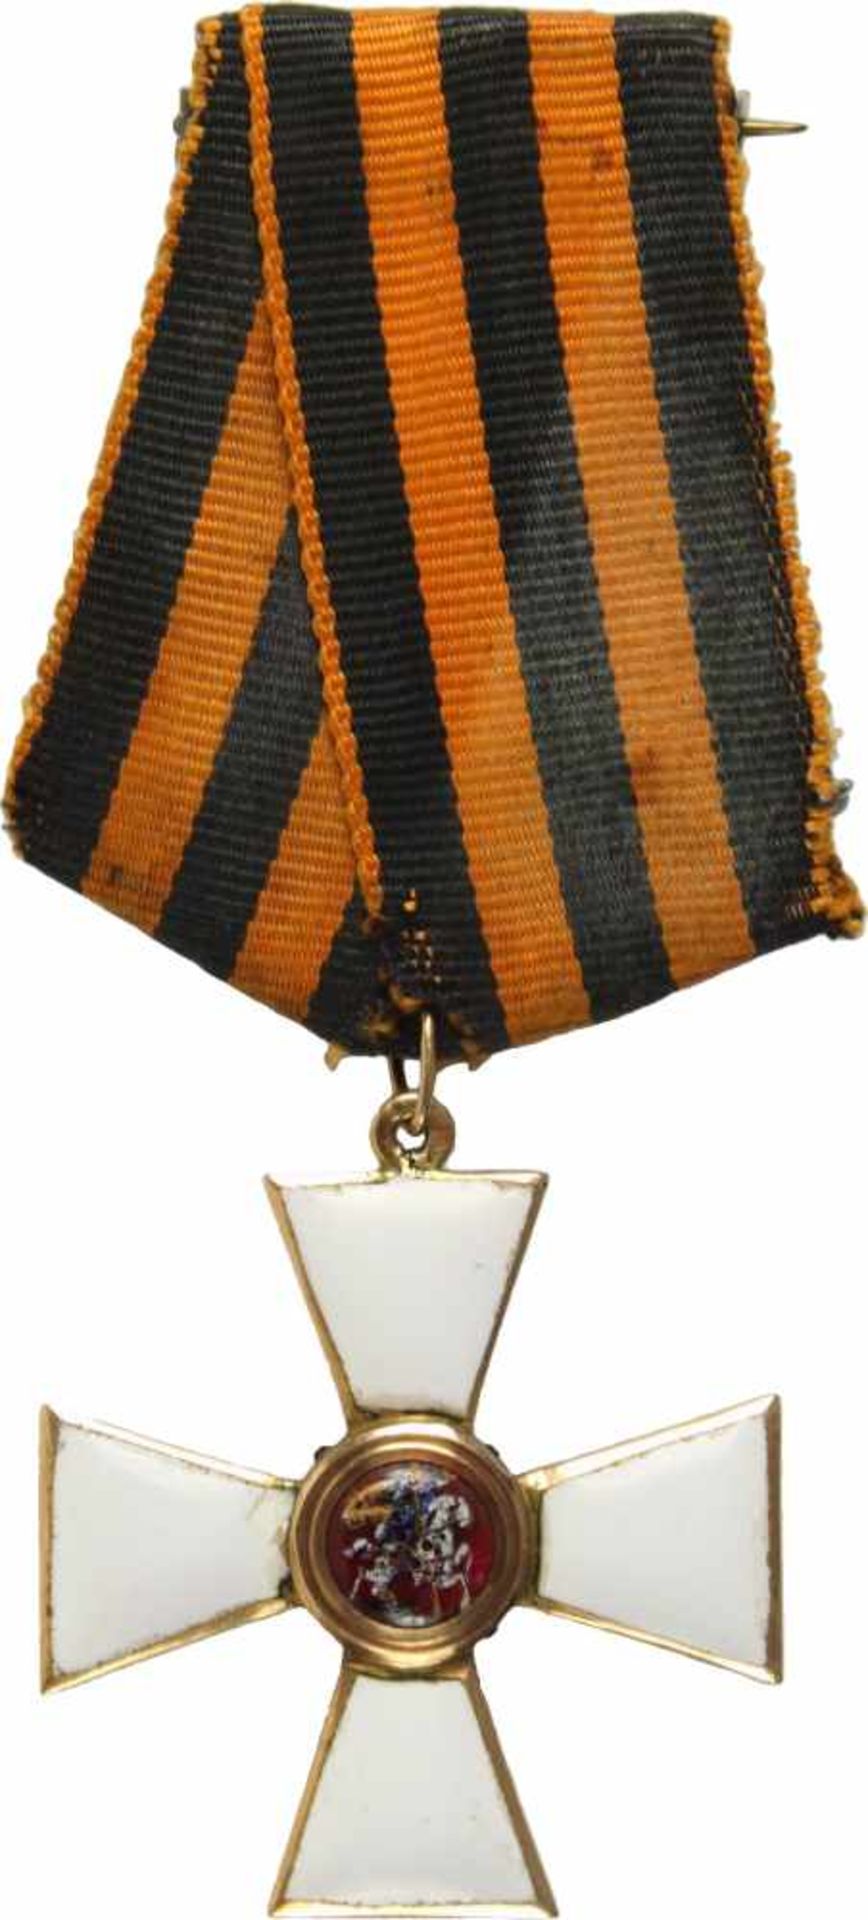 St. Georgs-Orden,Kreuz 4. Klasse. Kreuz Gold emailliert, 35mm, das Medaillon mit dem Reiter auf